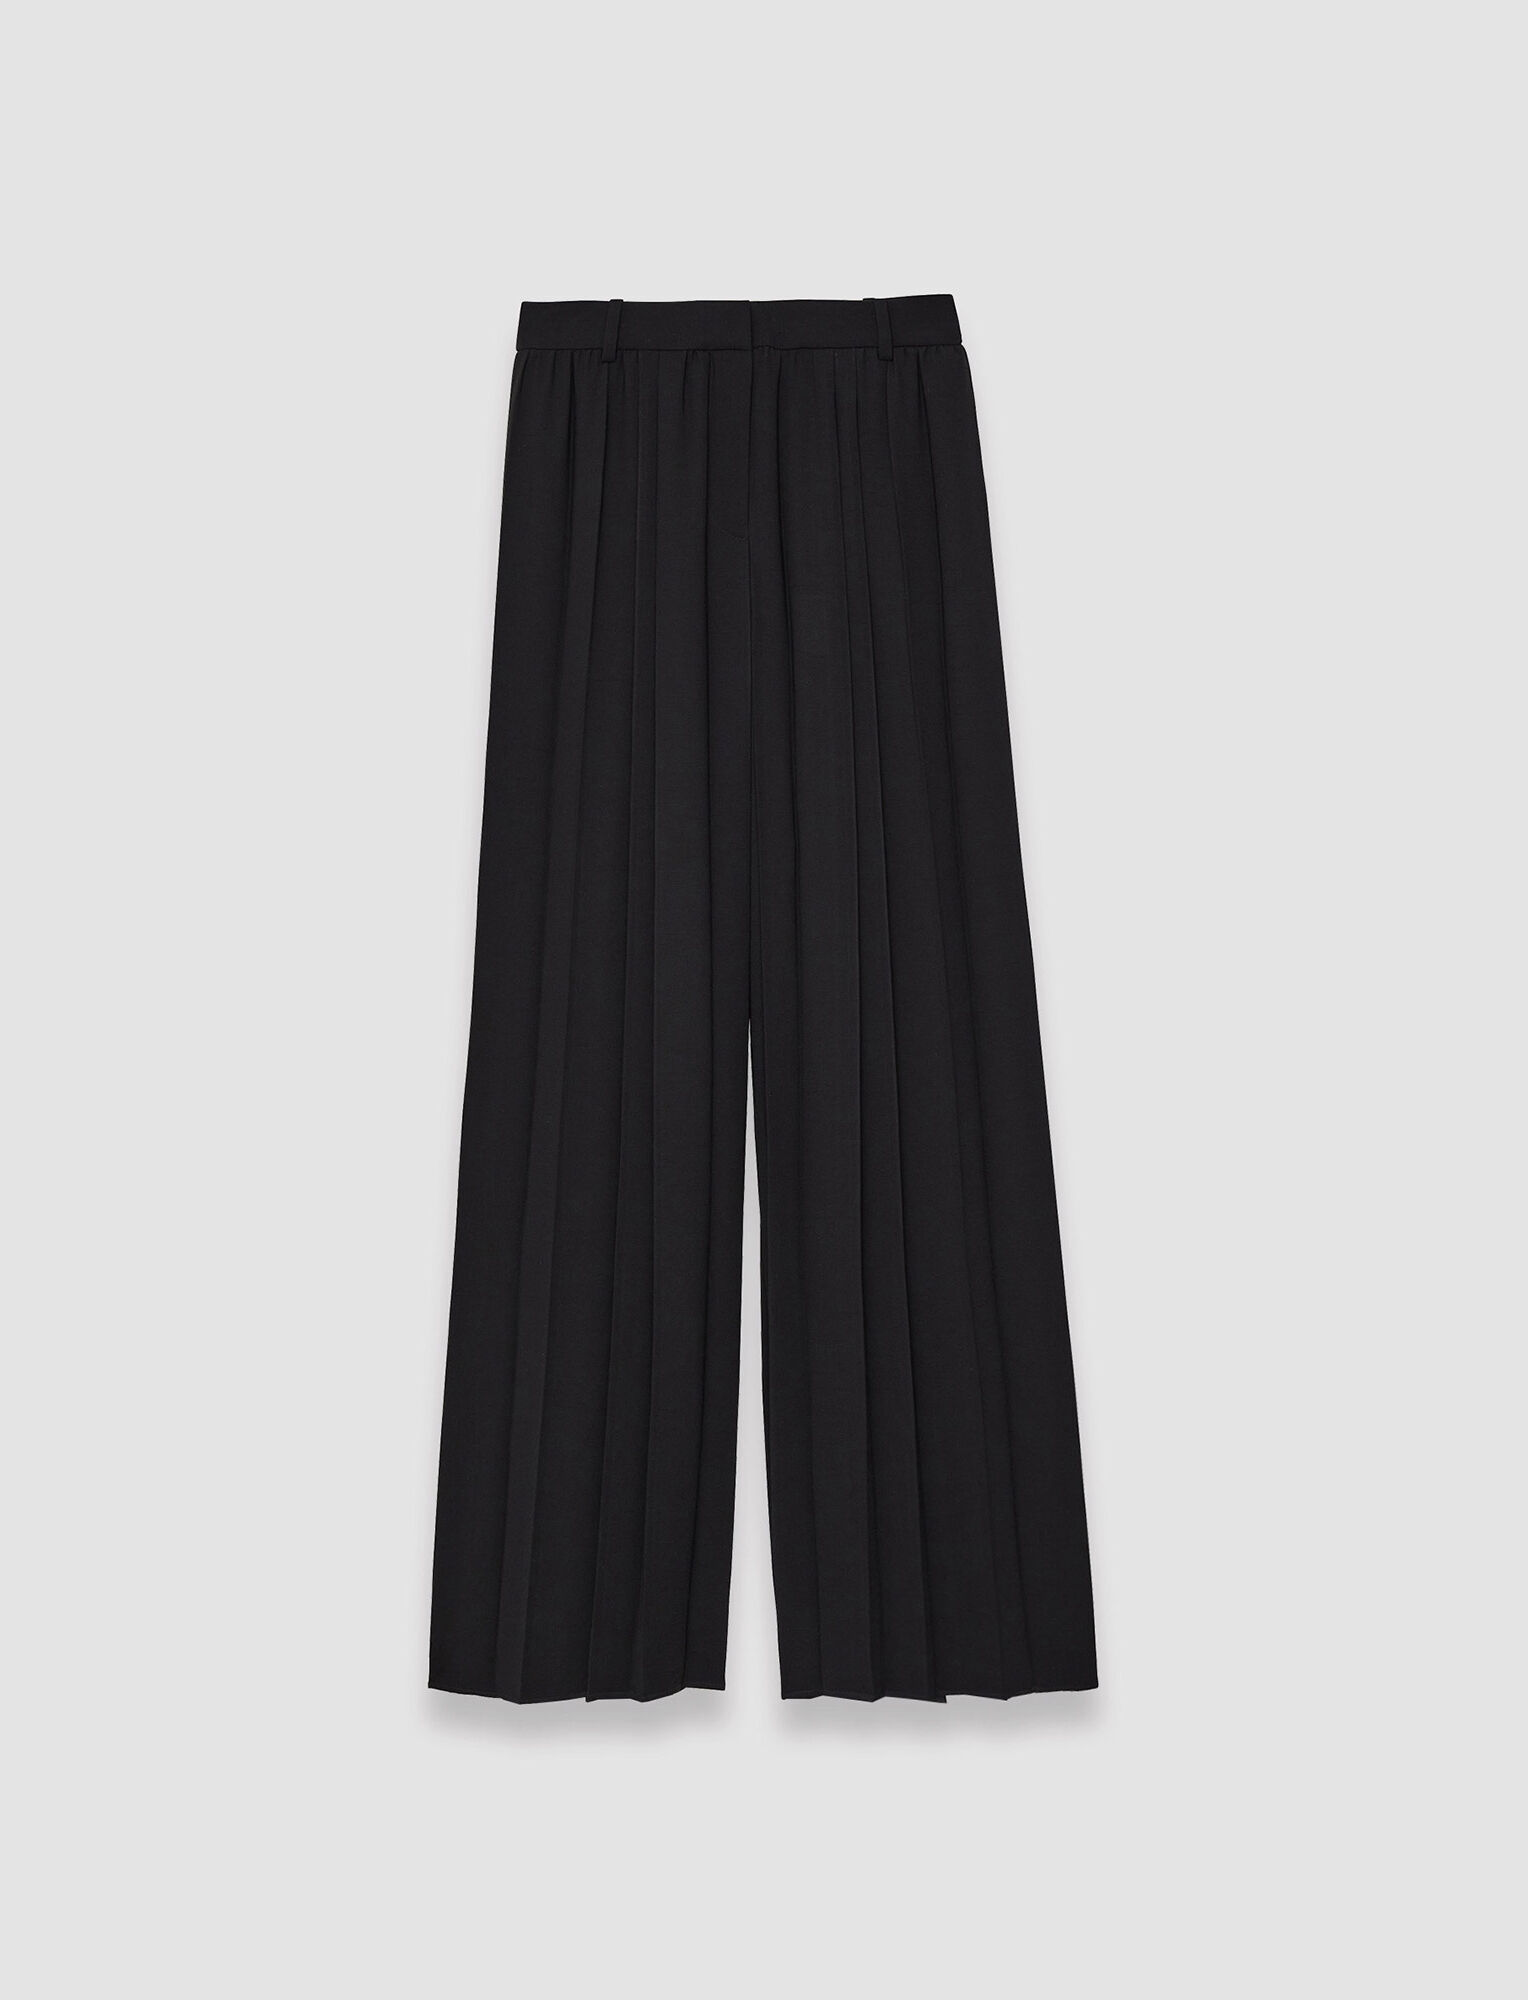 Joseph, Pantalon Tibre au plissé aérien, in Black